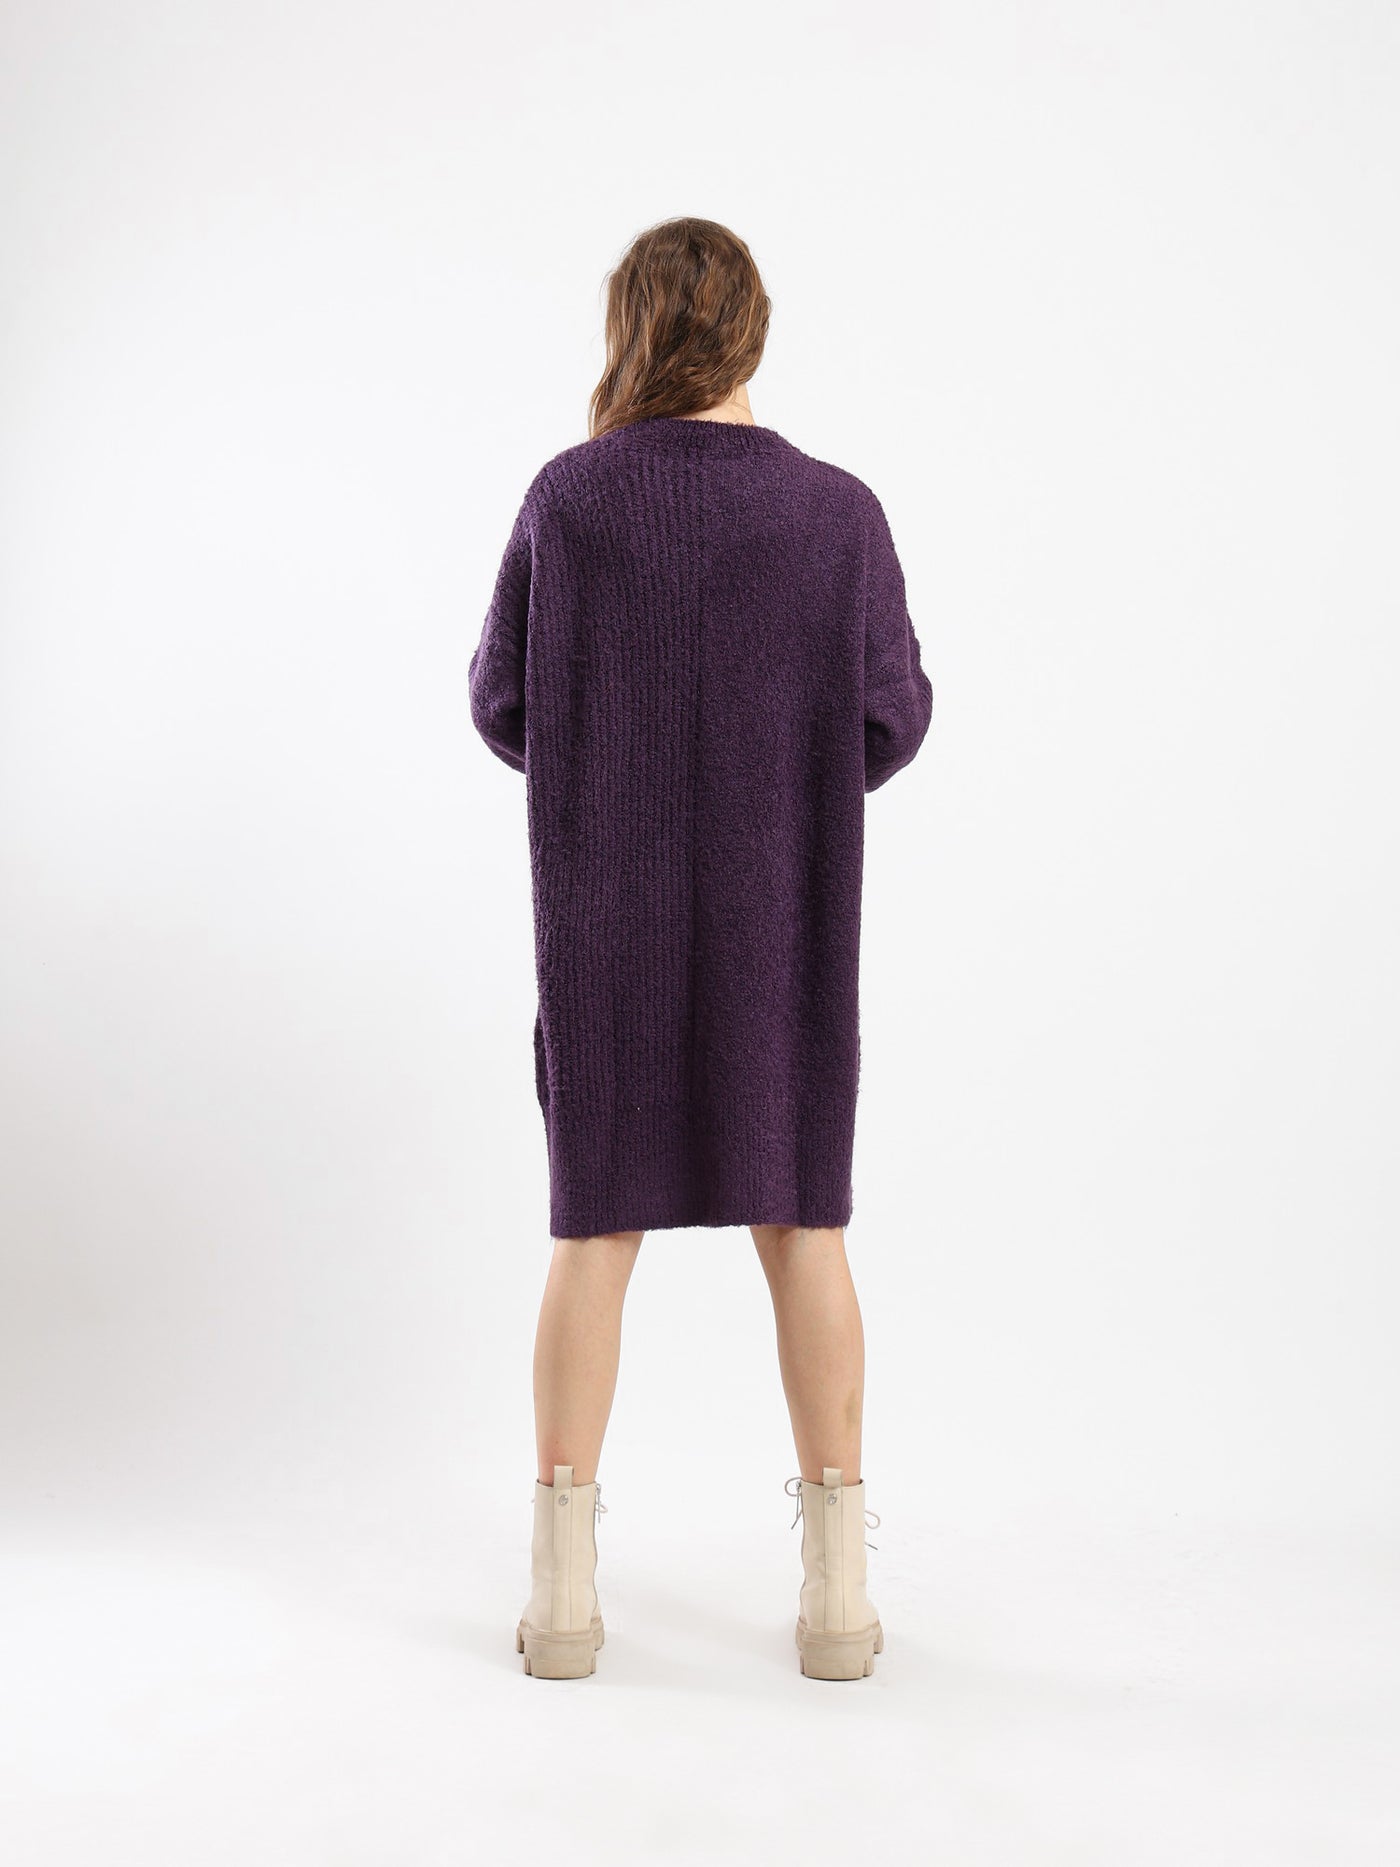 Dress - Knitted - Knee Length